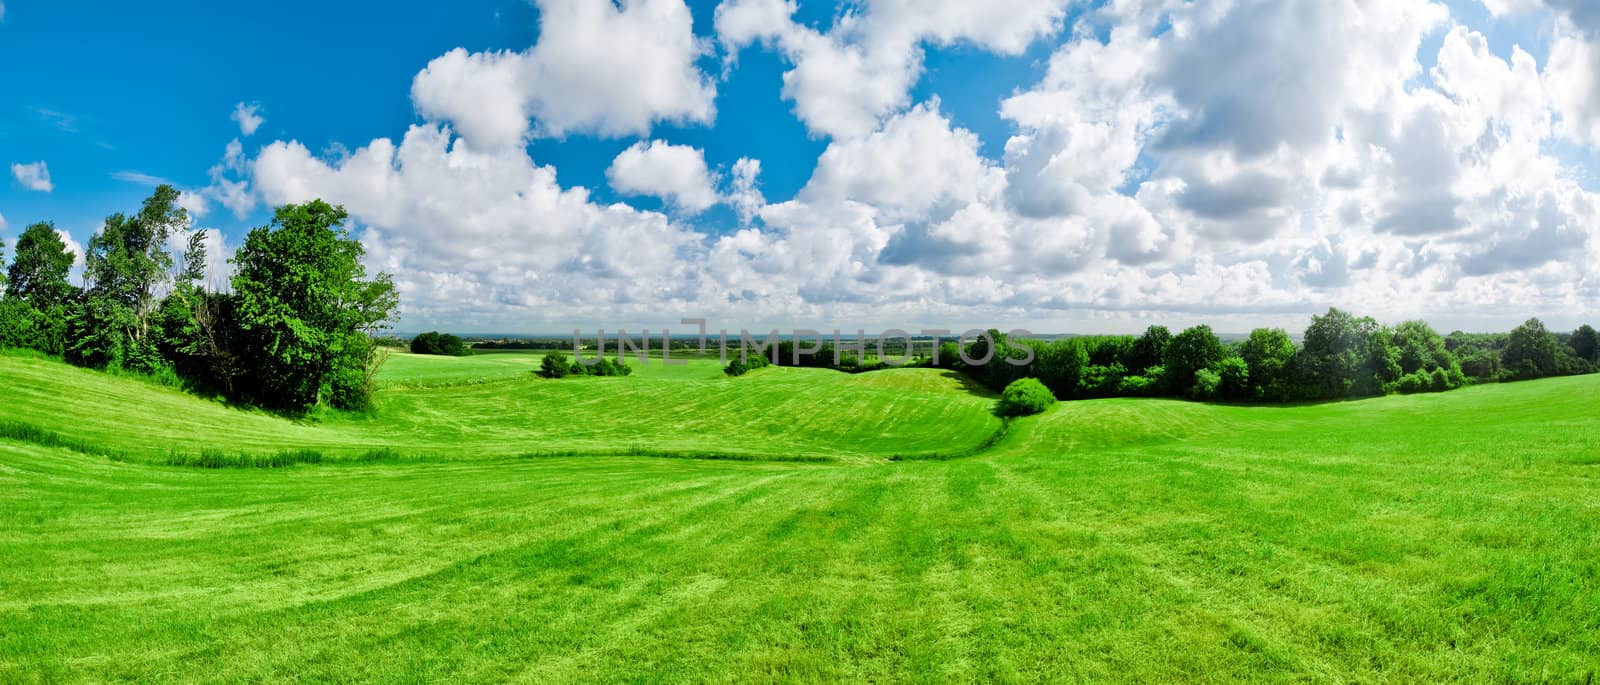 Green meadow by filmstroem